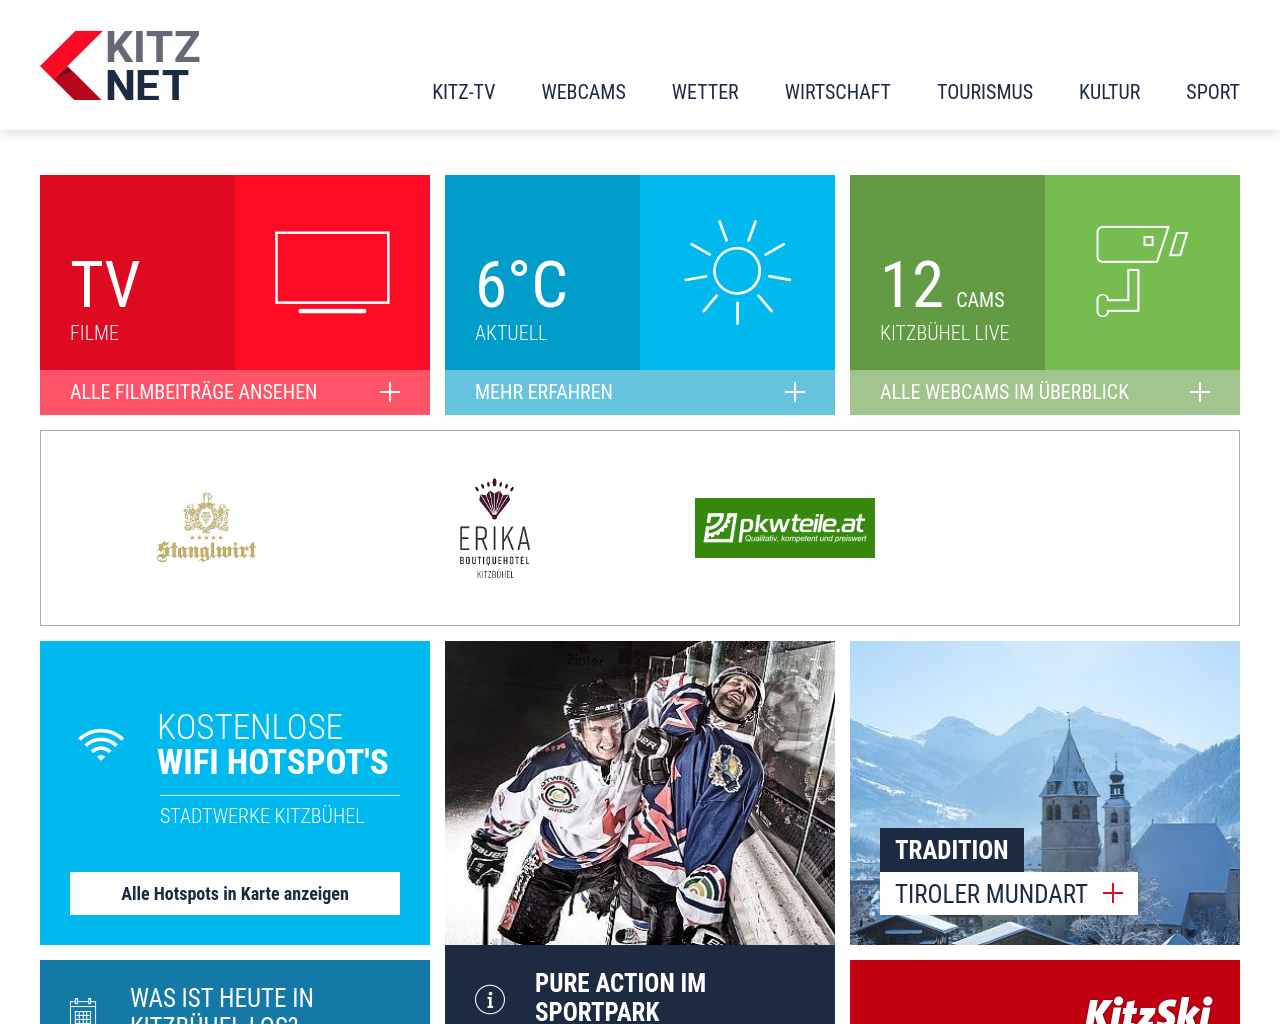 kitz.net